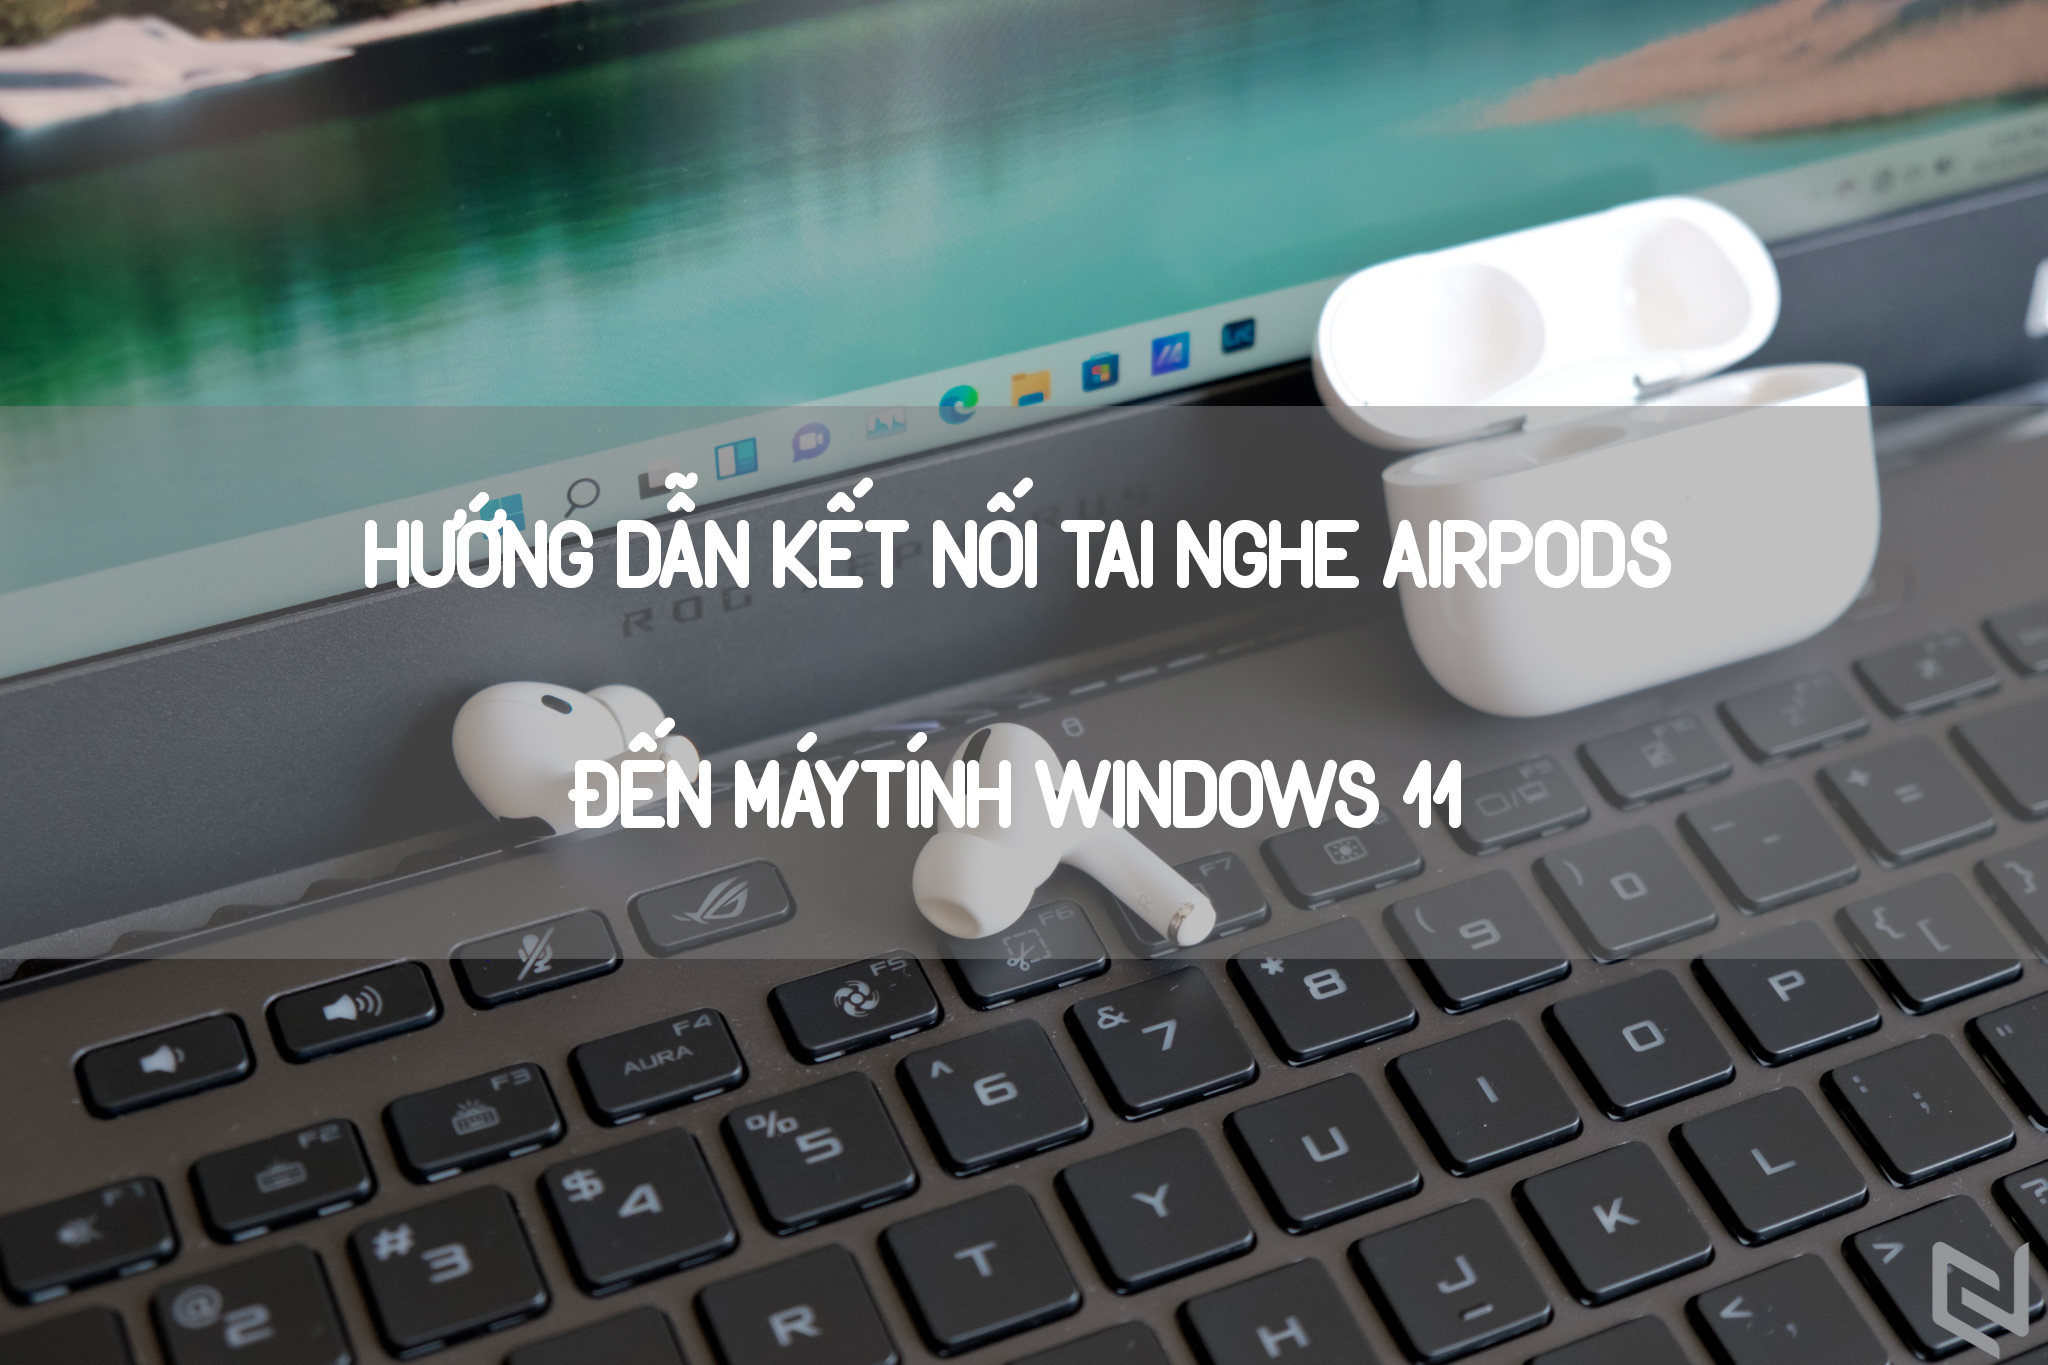 Hướng dẫn cách kết nối tai nghe AirPods tới máy tính Windows 11